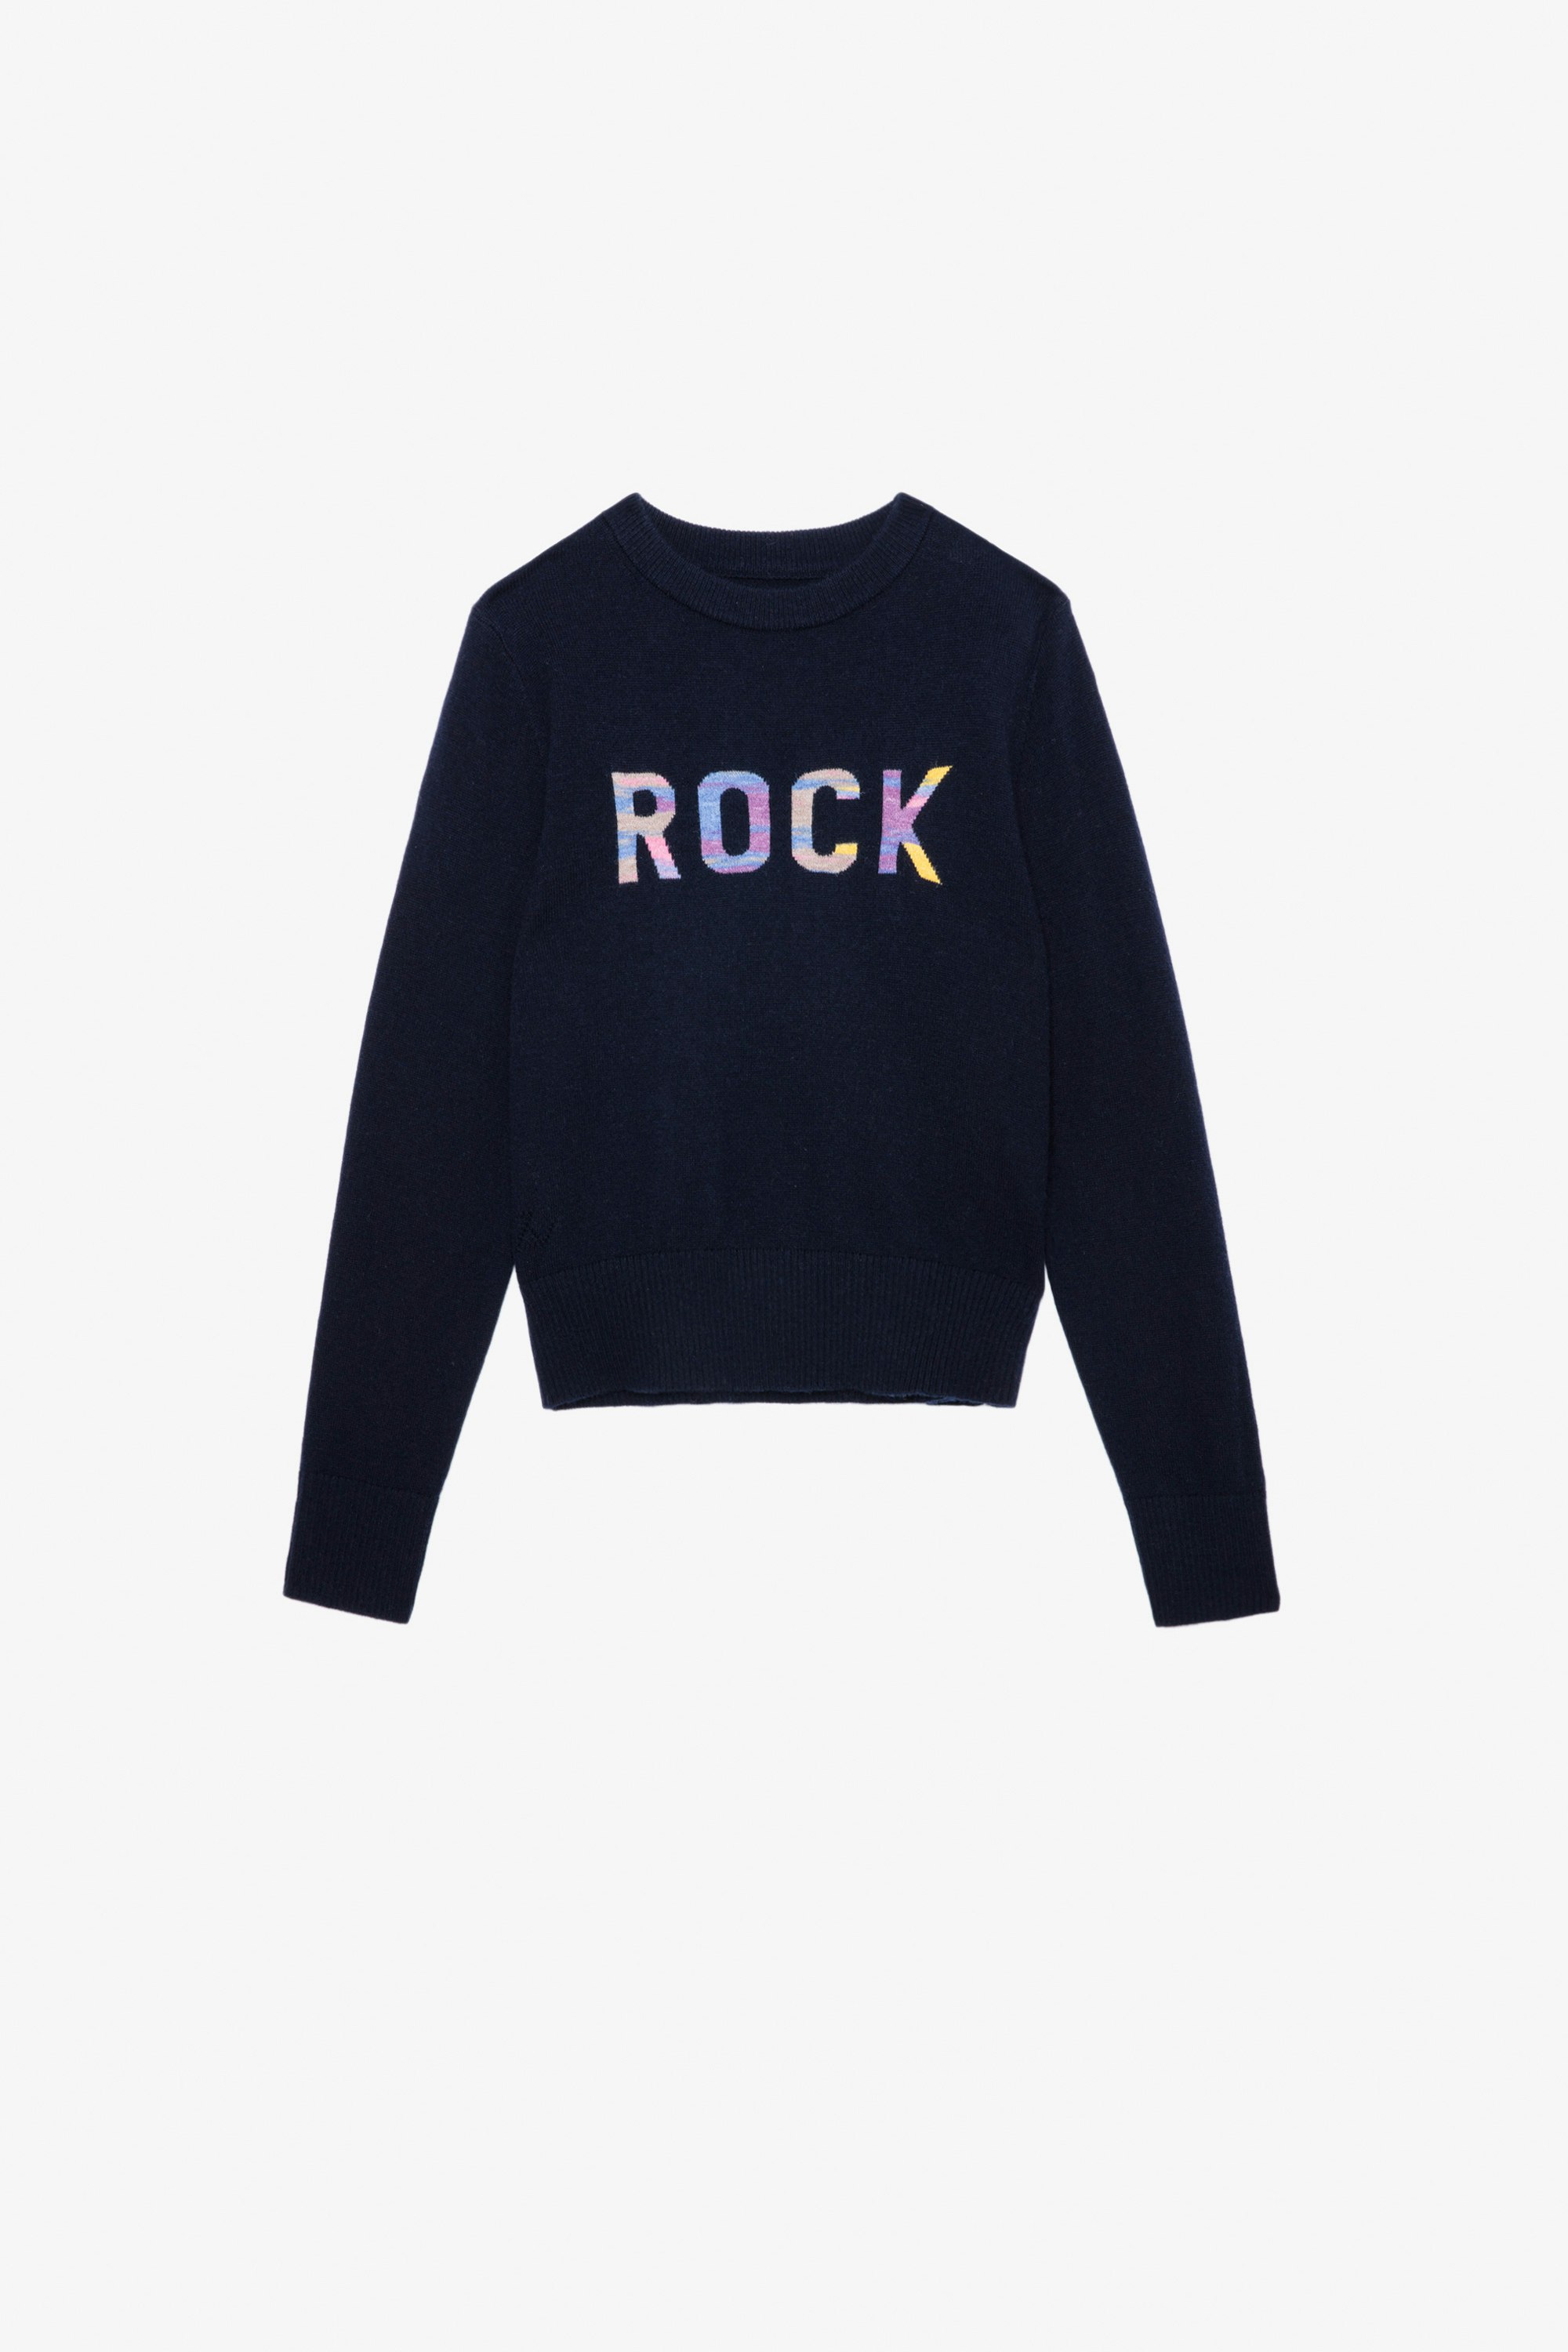 Drum Girls’ Jumper Girls’ navy blue knit jumper with “Rock” slogan.